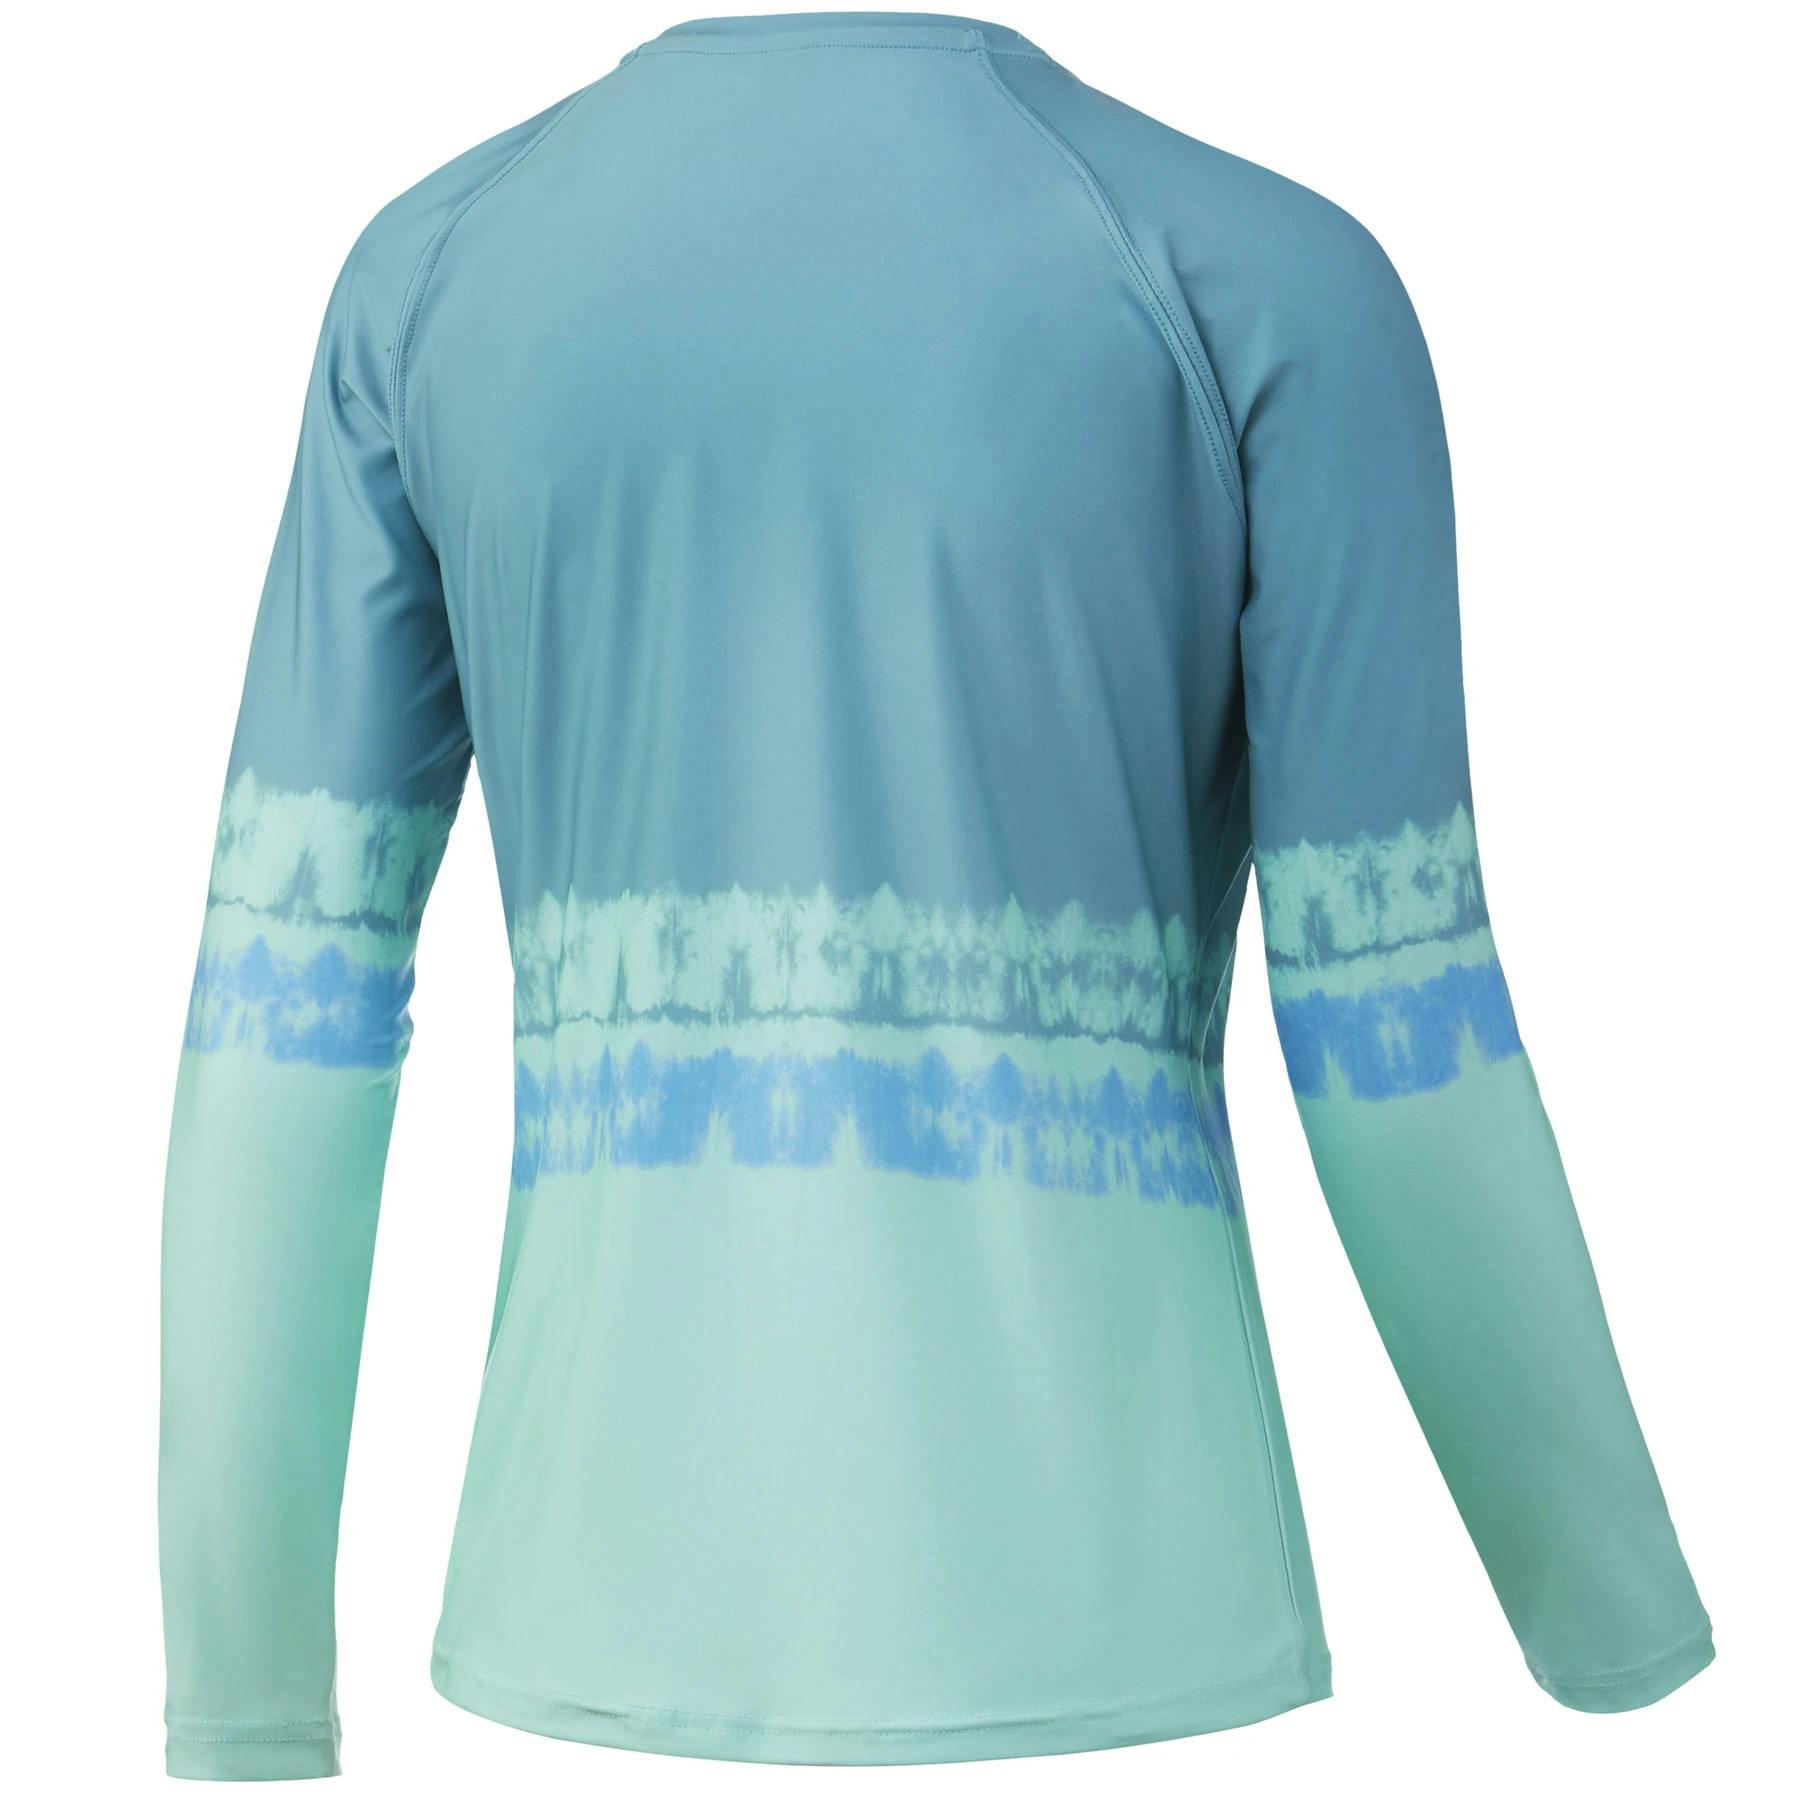 Huk Women's Salt Dye Pursuit Performance Shirt Back - Beach Glass